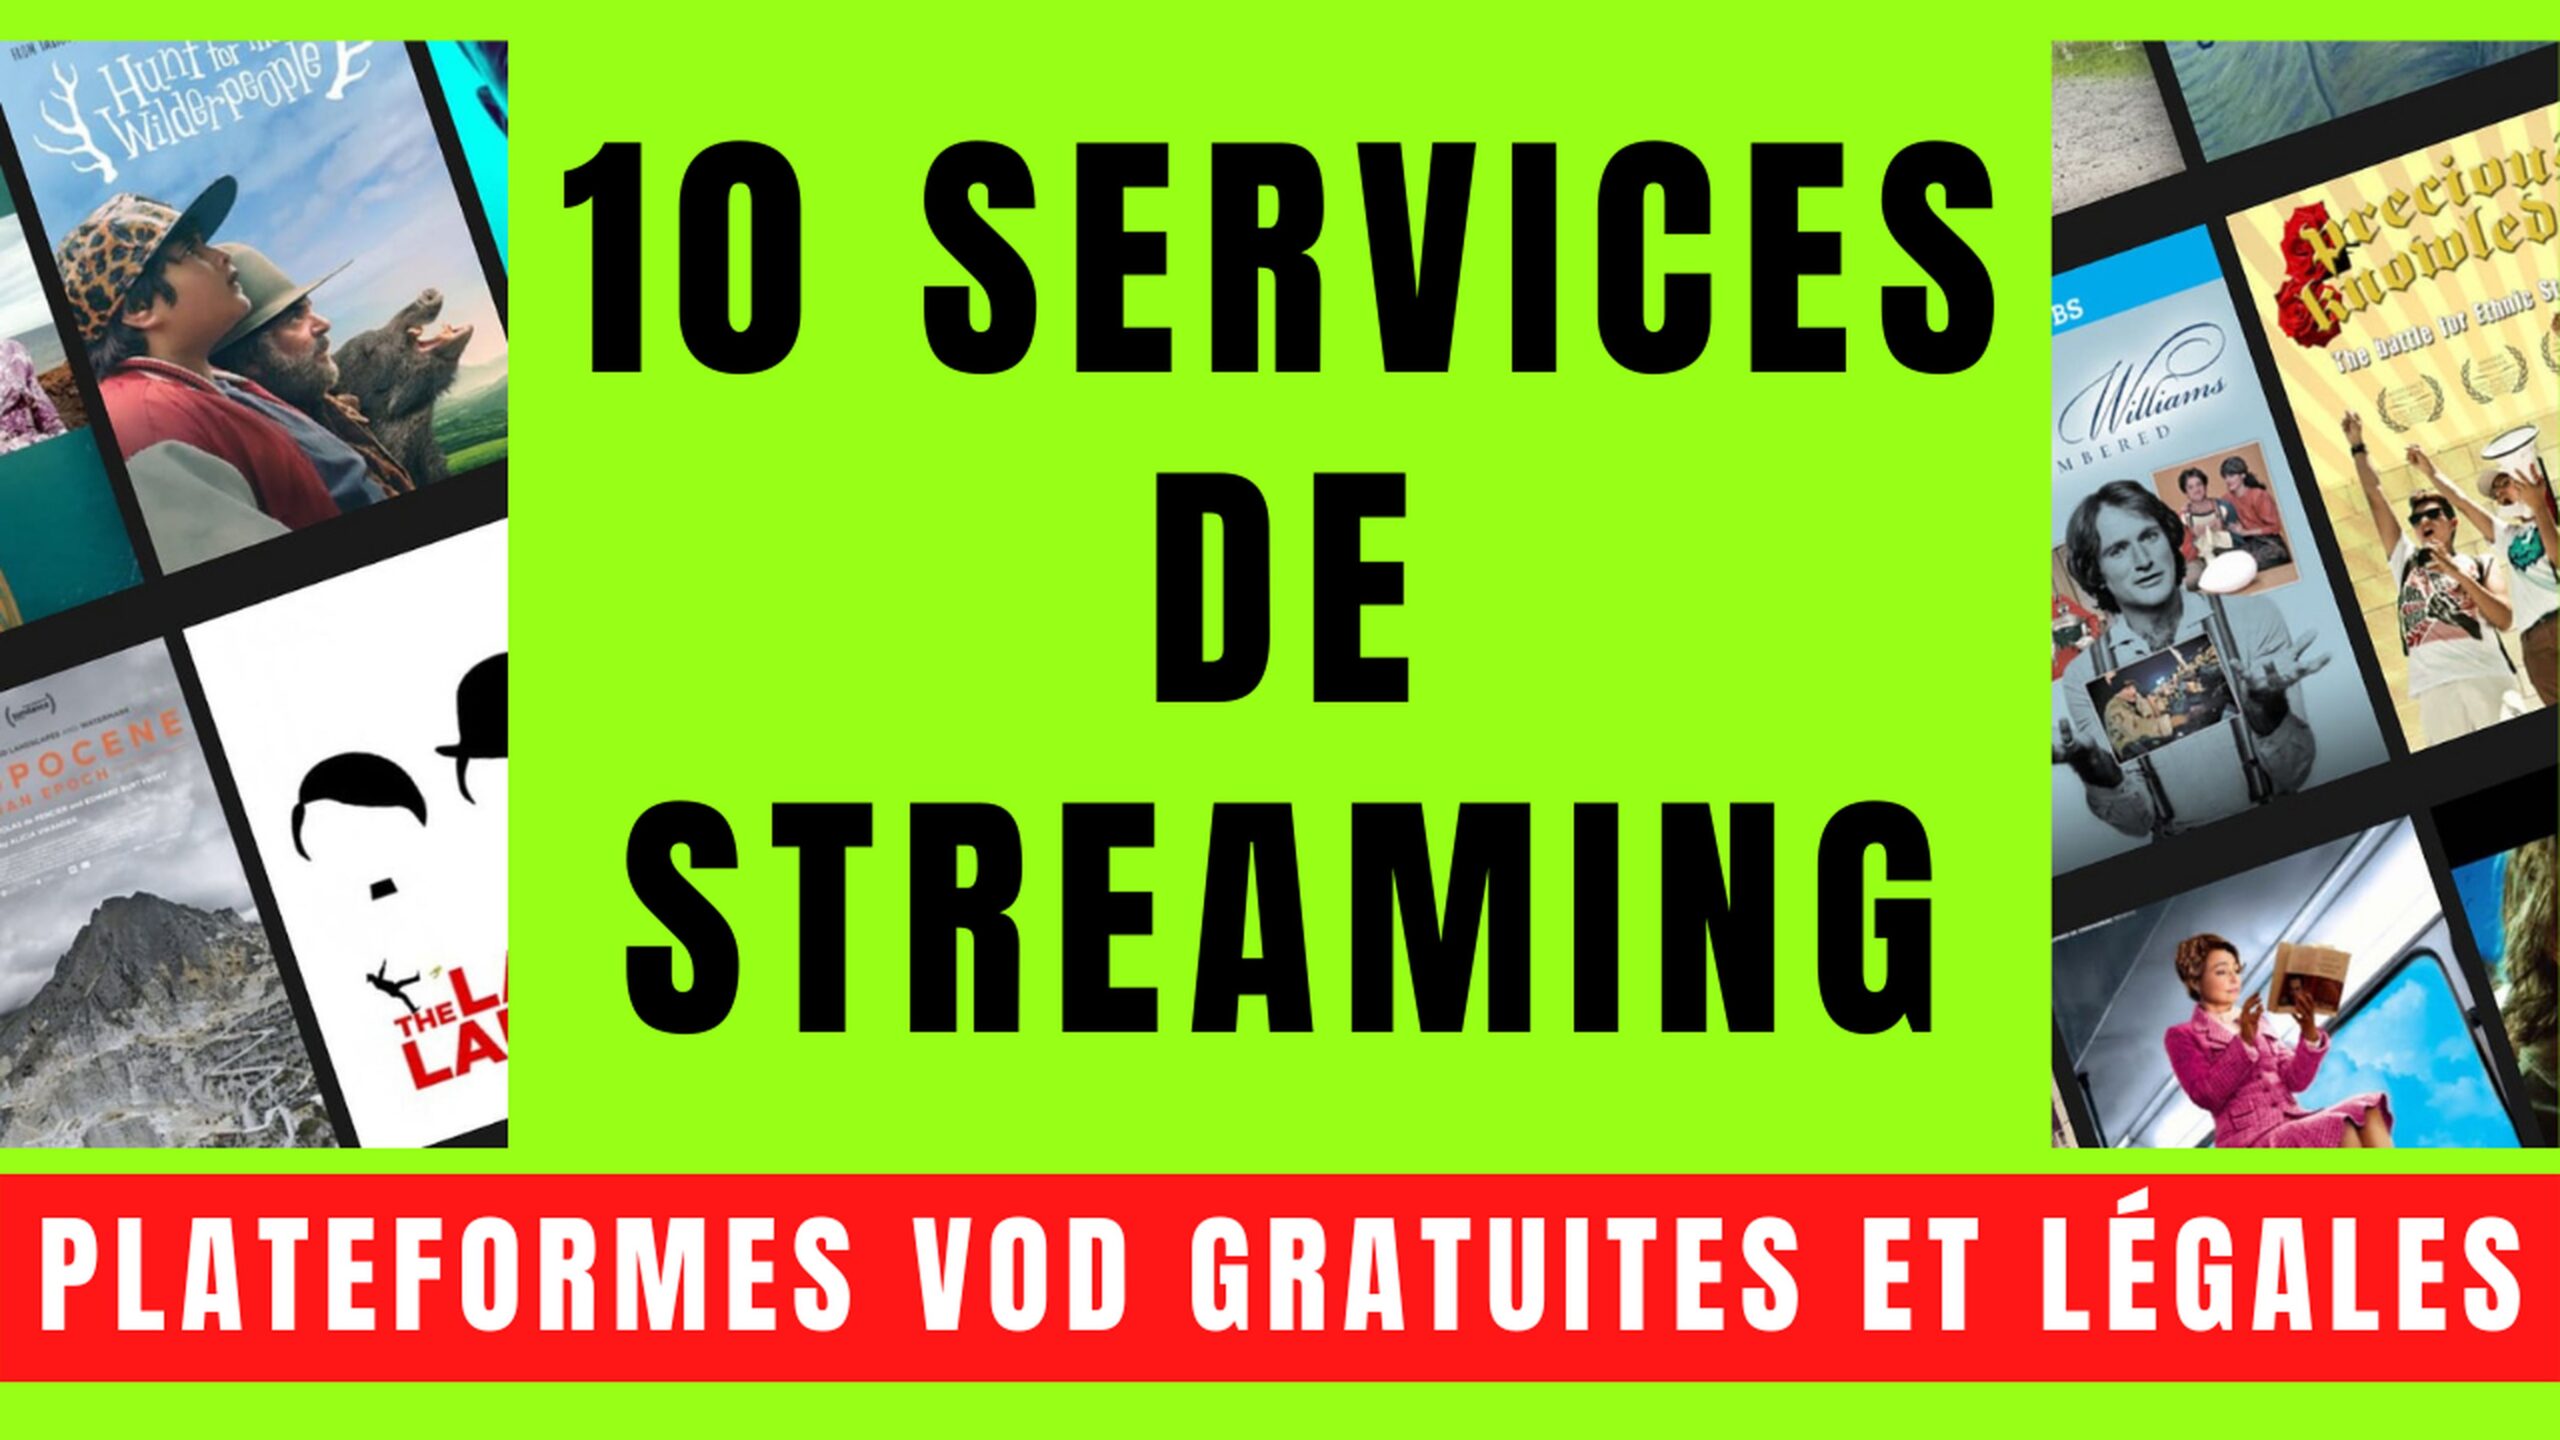 10 SERVICES VOD avec STREAMING GRATUIT et LÉGAL 27